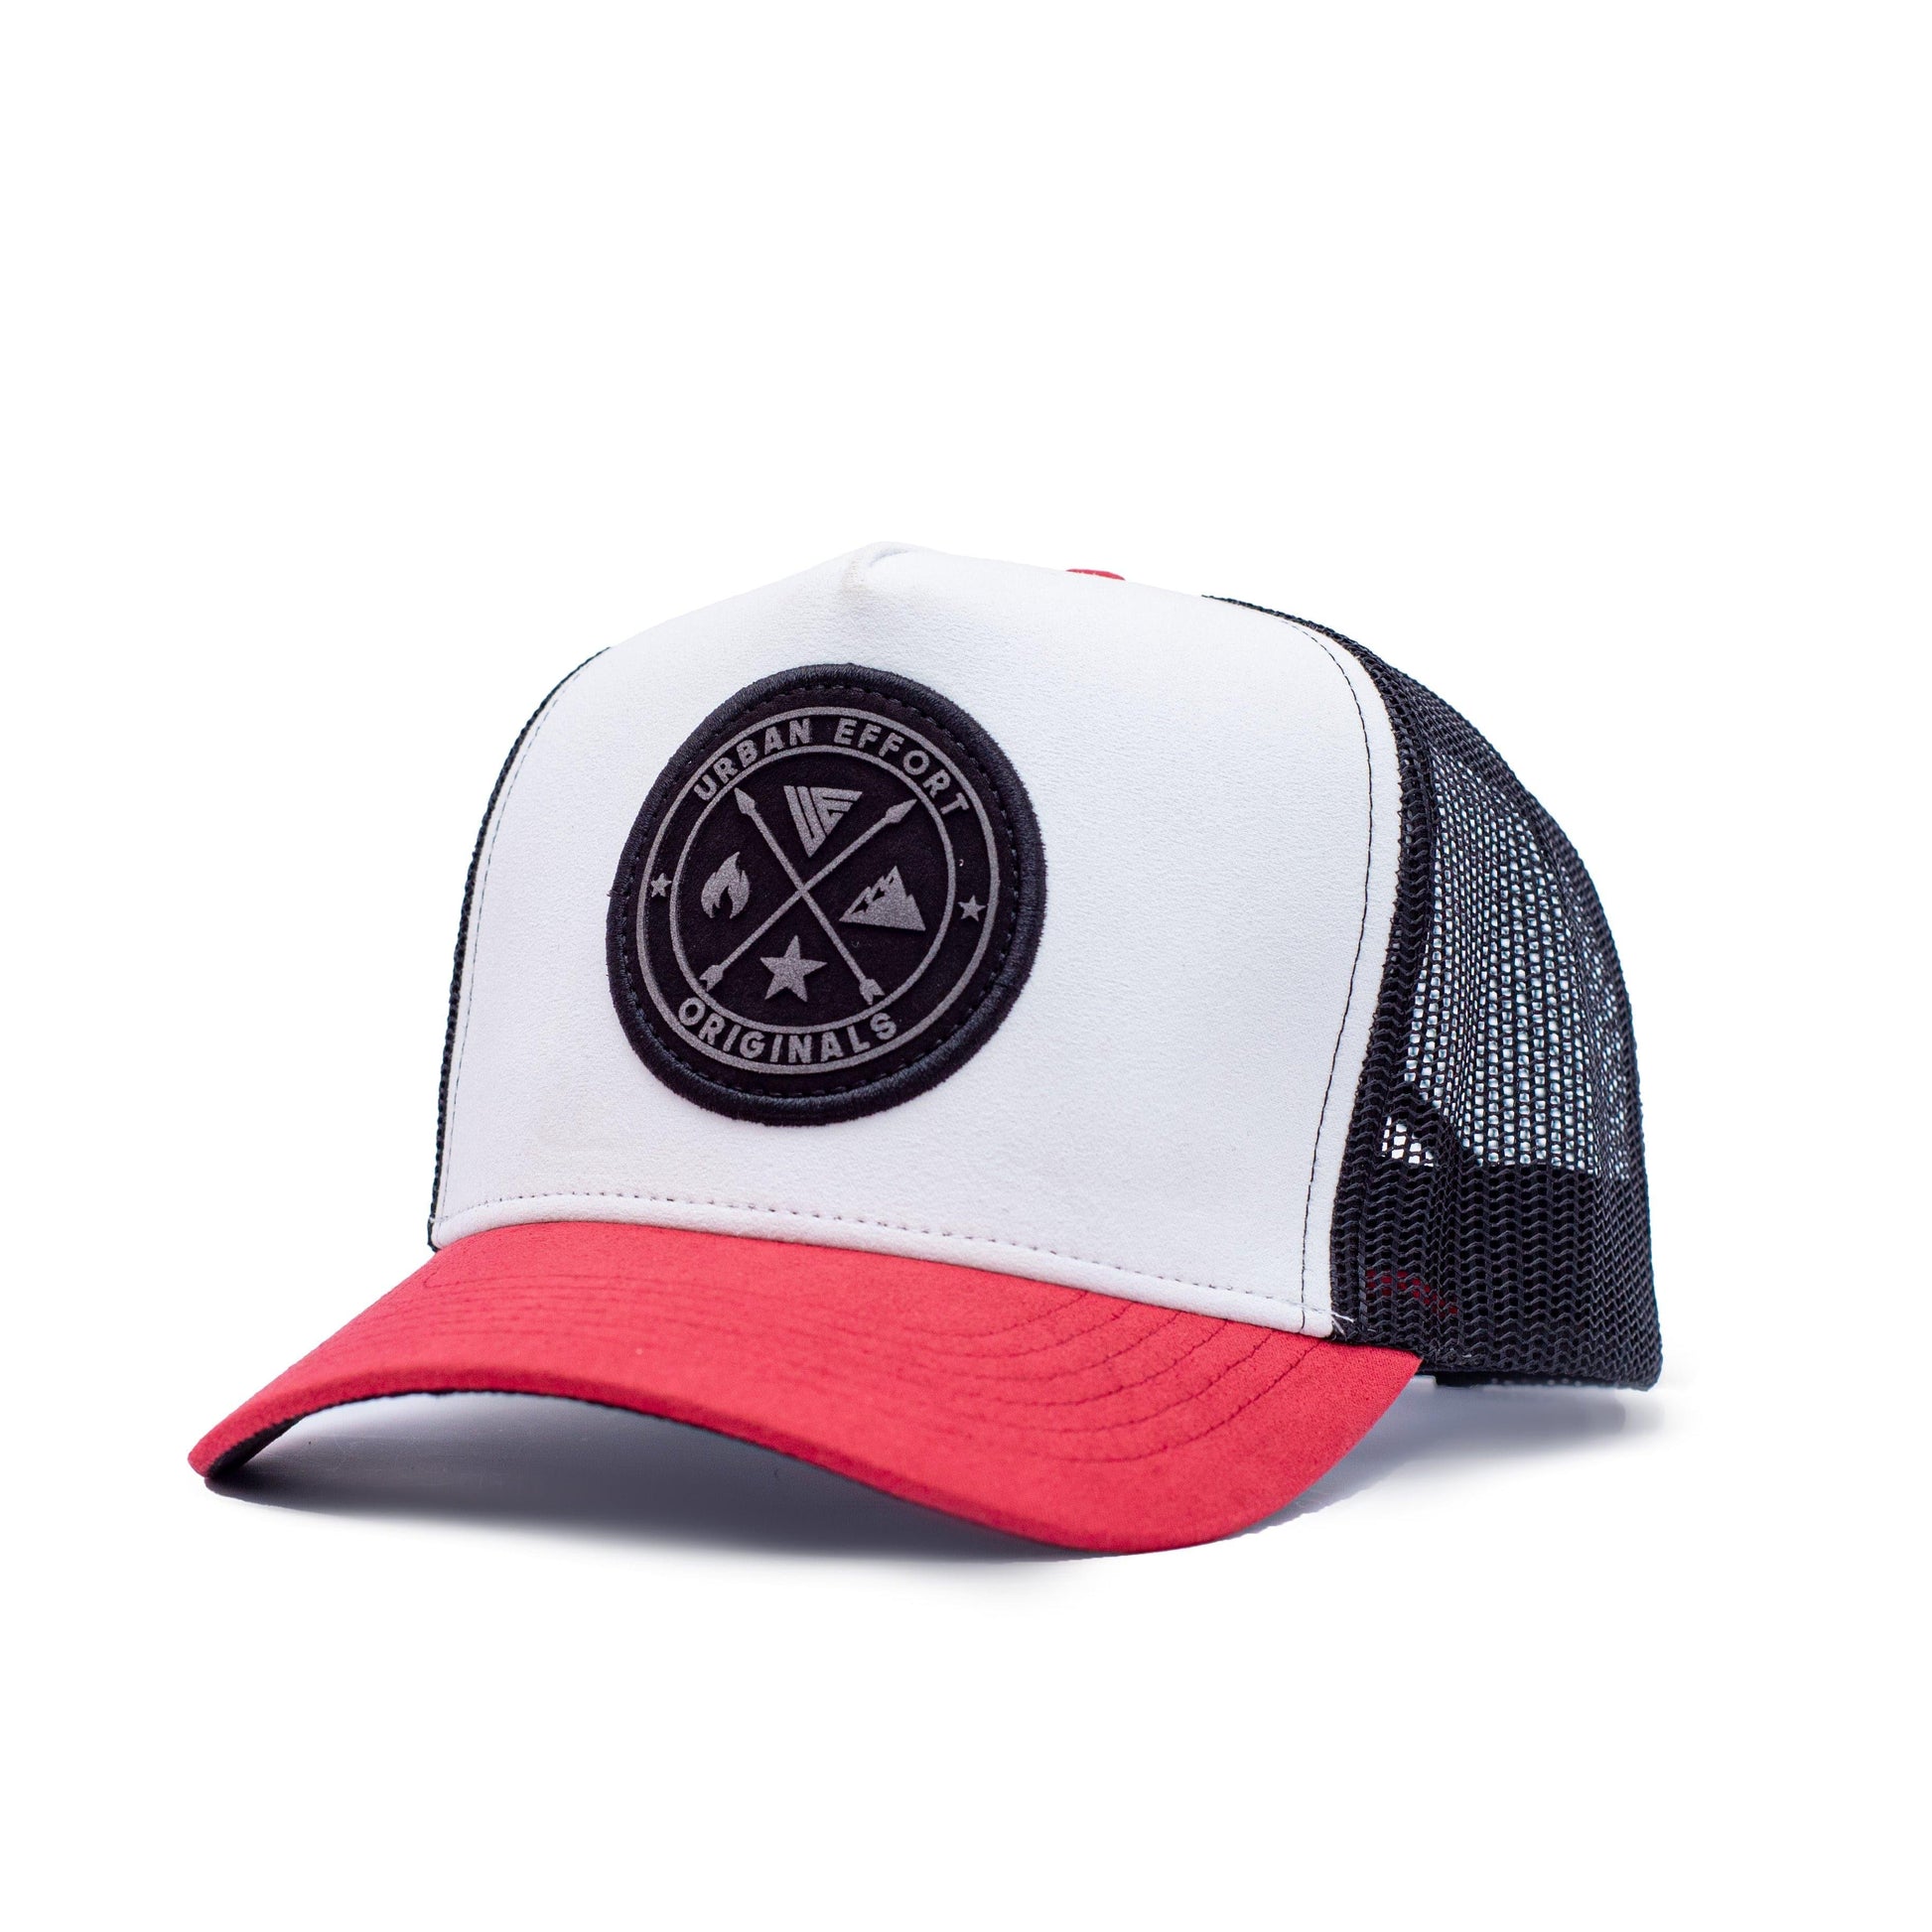 Black + White + Red Trucker Hat | Original's | Urban Effort - Urban Effort